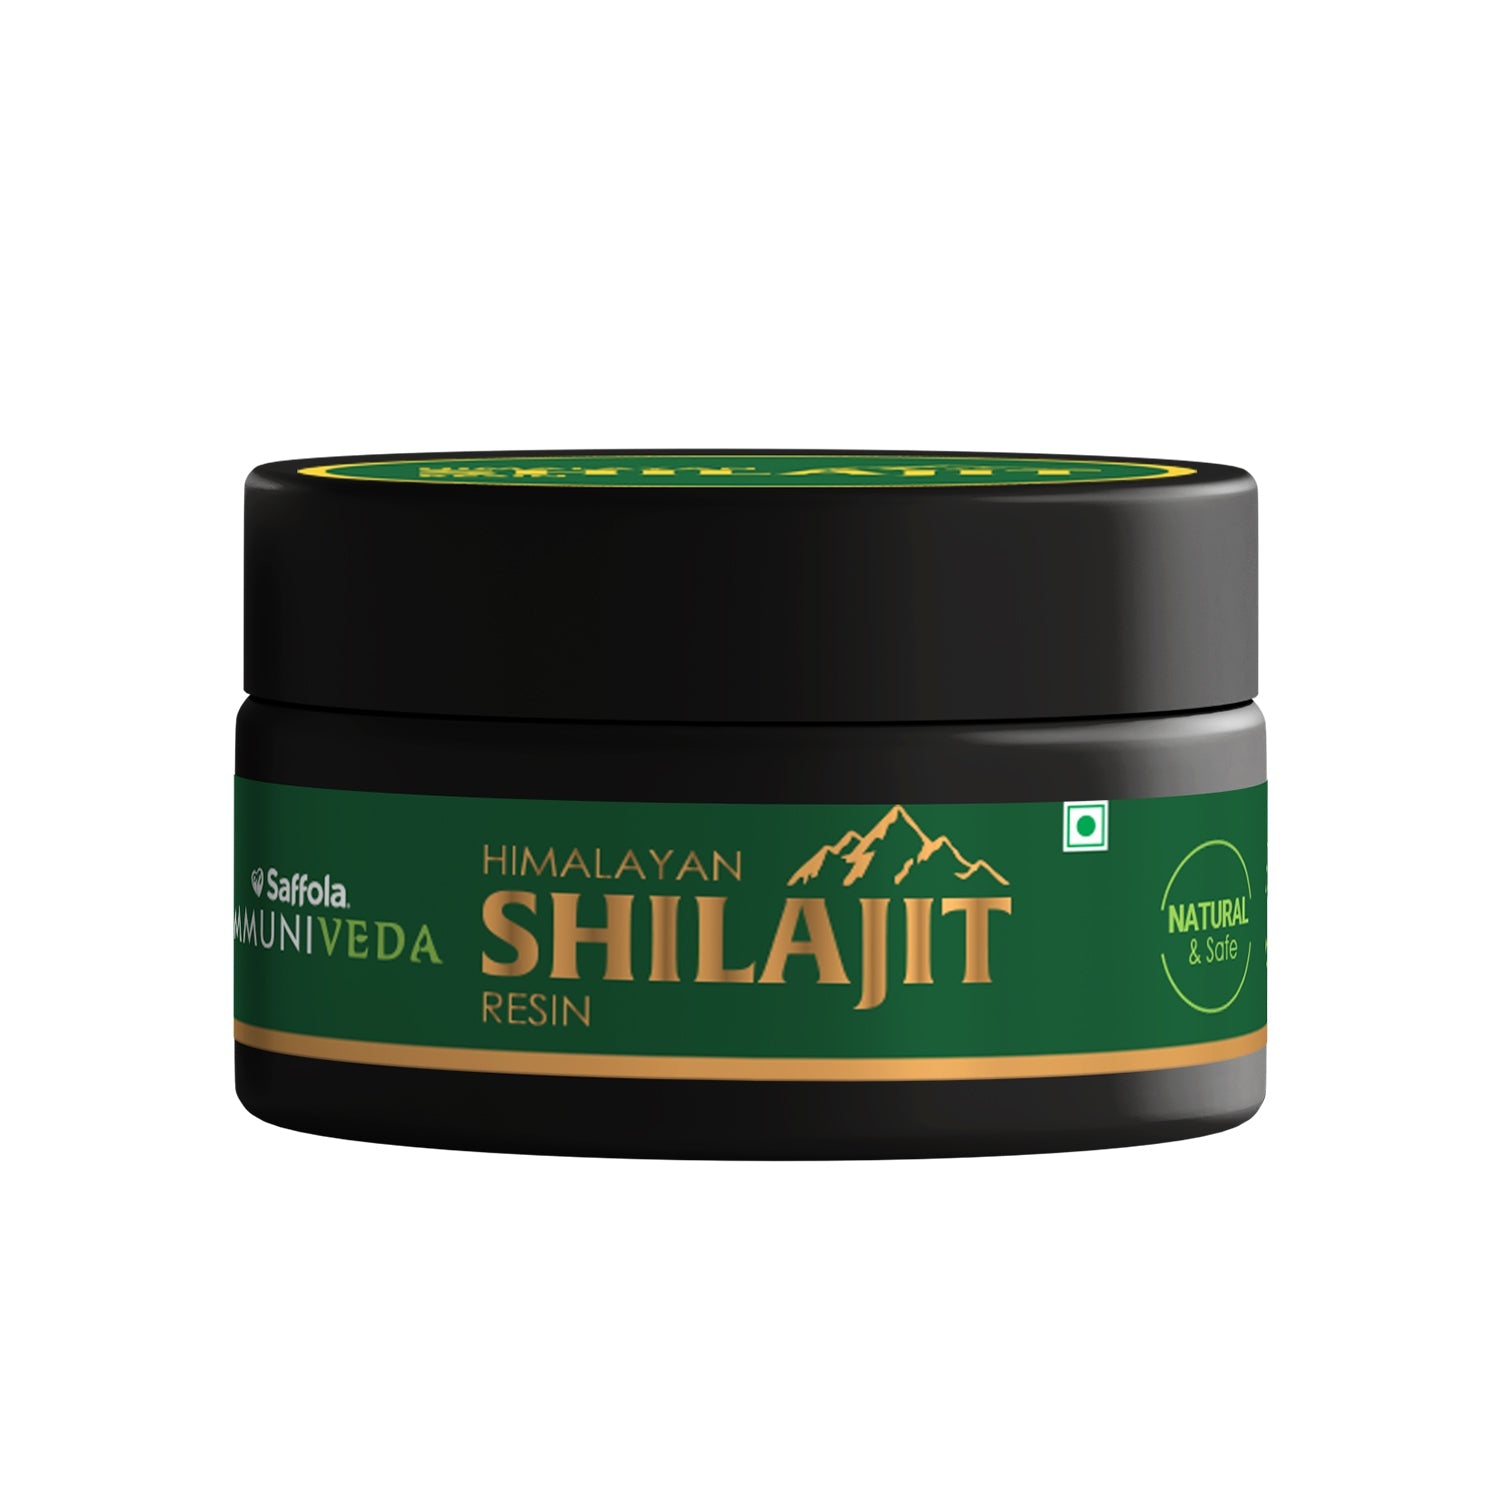 [SALE] Saffola Immuniveda Pure Himalayan Shilajit Resin – 30 g